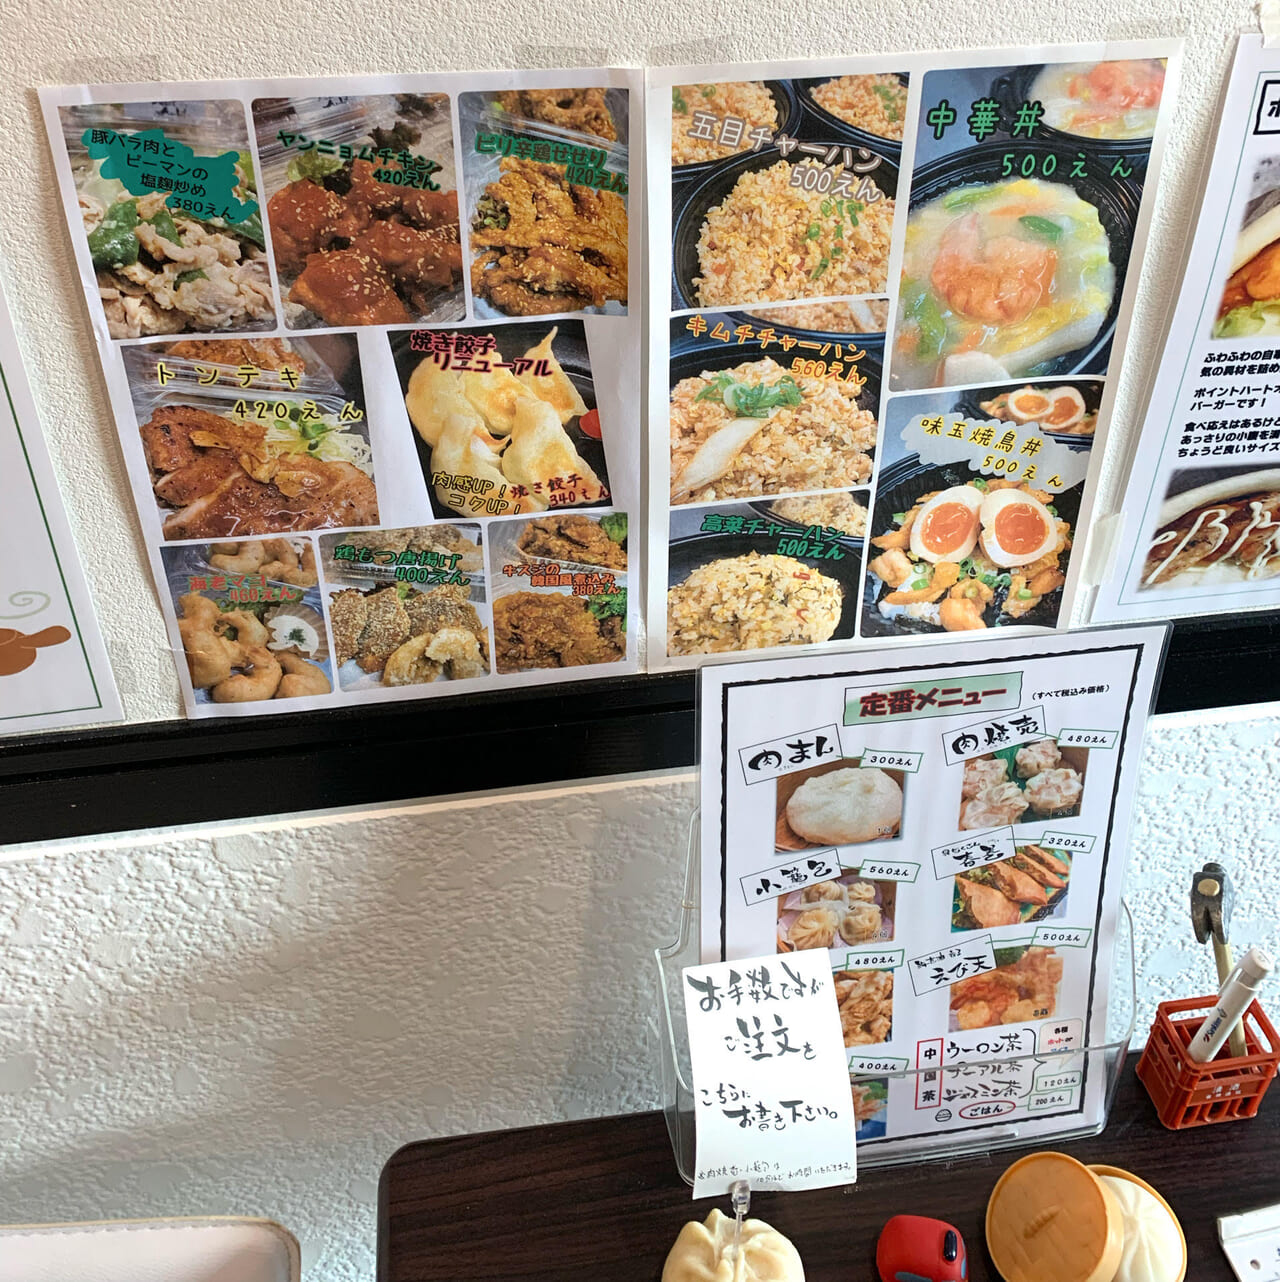 松本町の点心と総菜のテイクアウト専門店「Point Heart Market」の点心は拘って作られていました!!